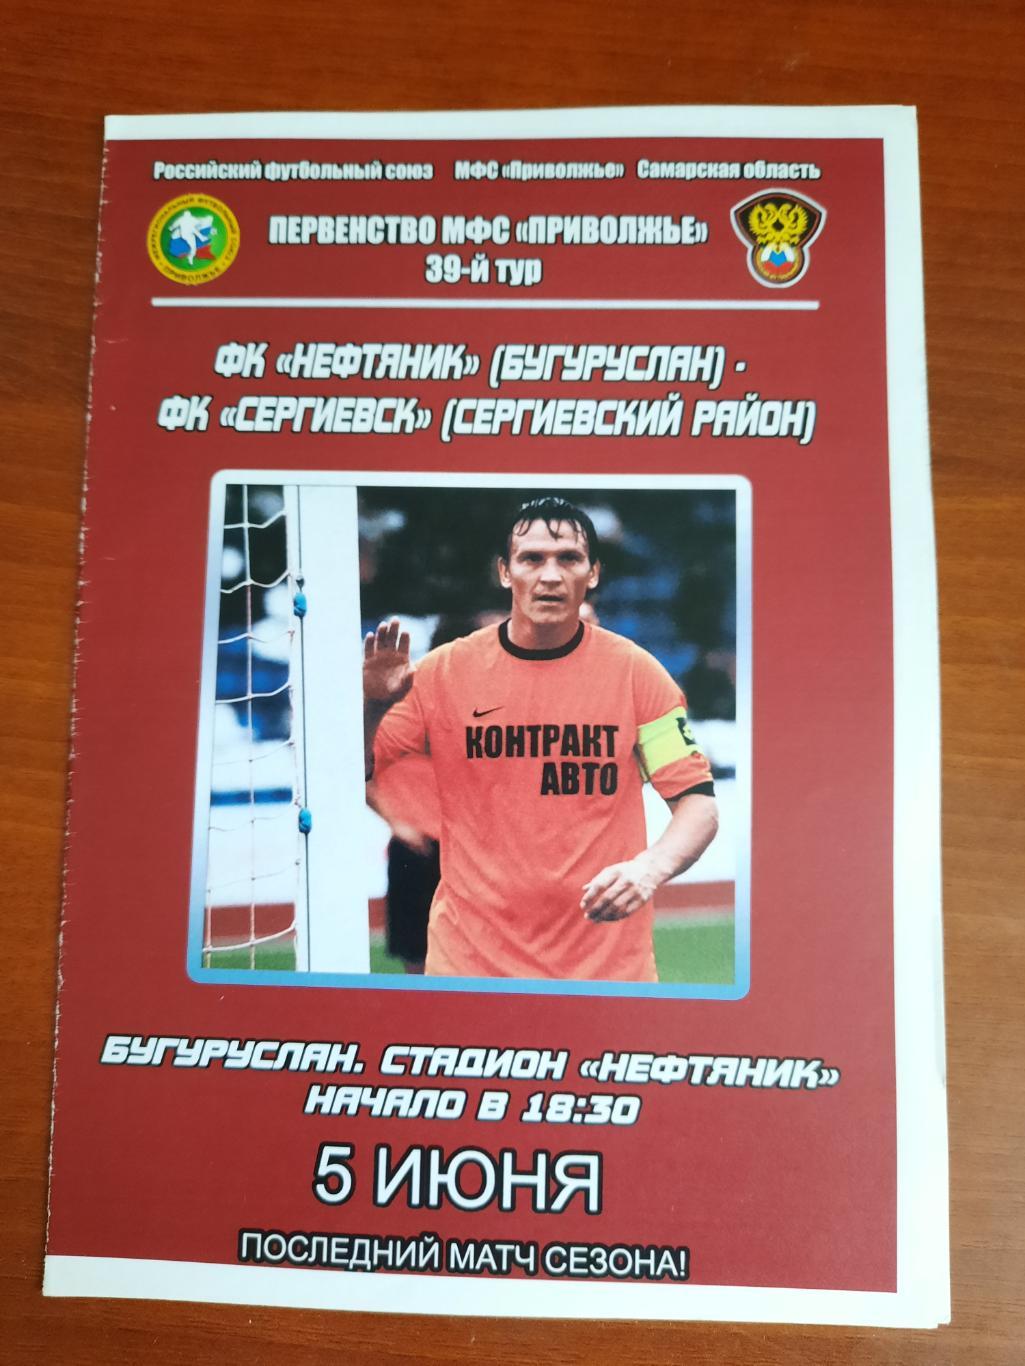 Нефтячник Бугуруслан ФК Сергиевск 05.06.2012